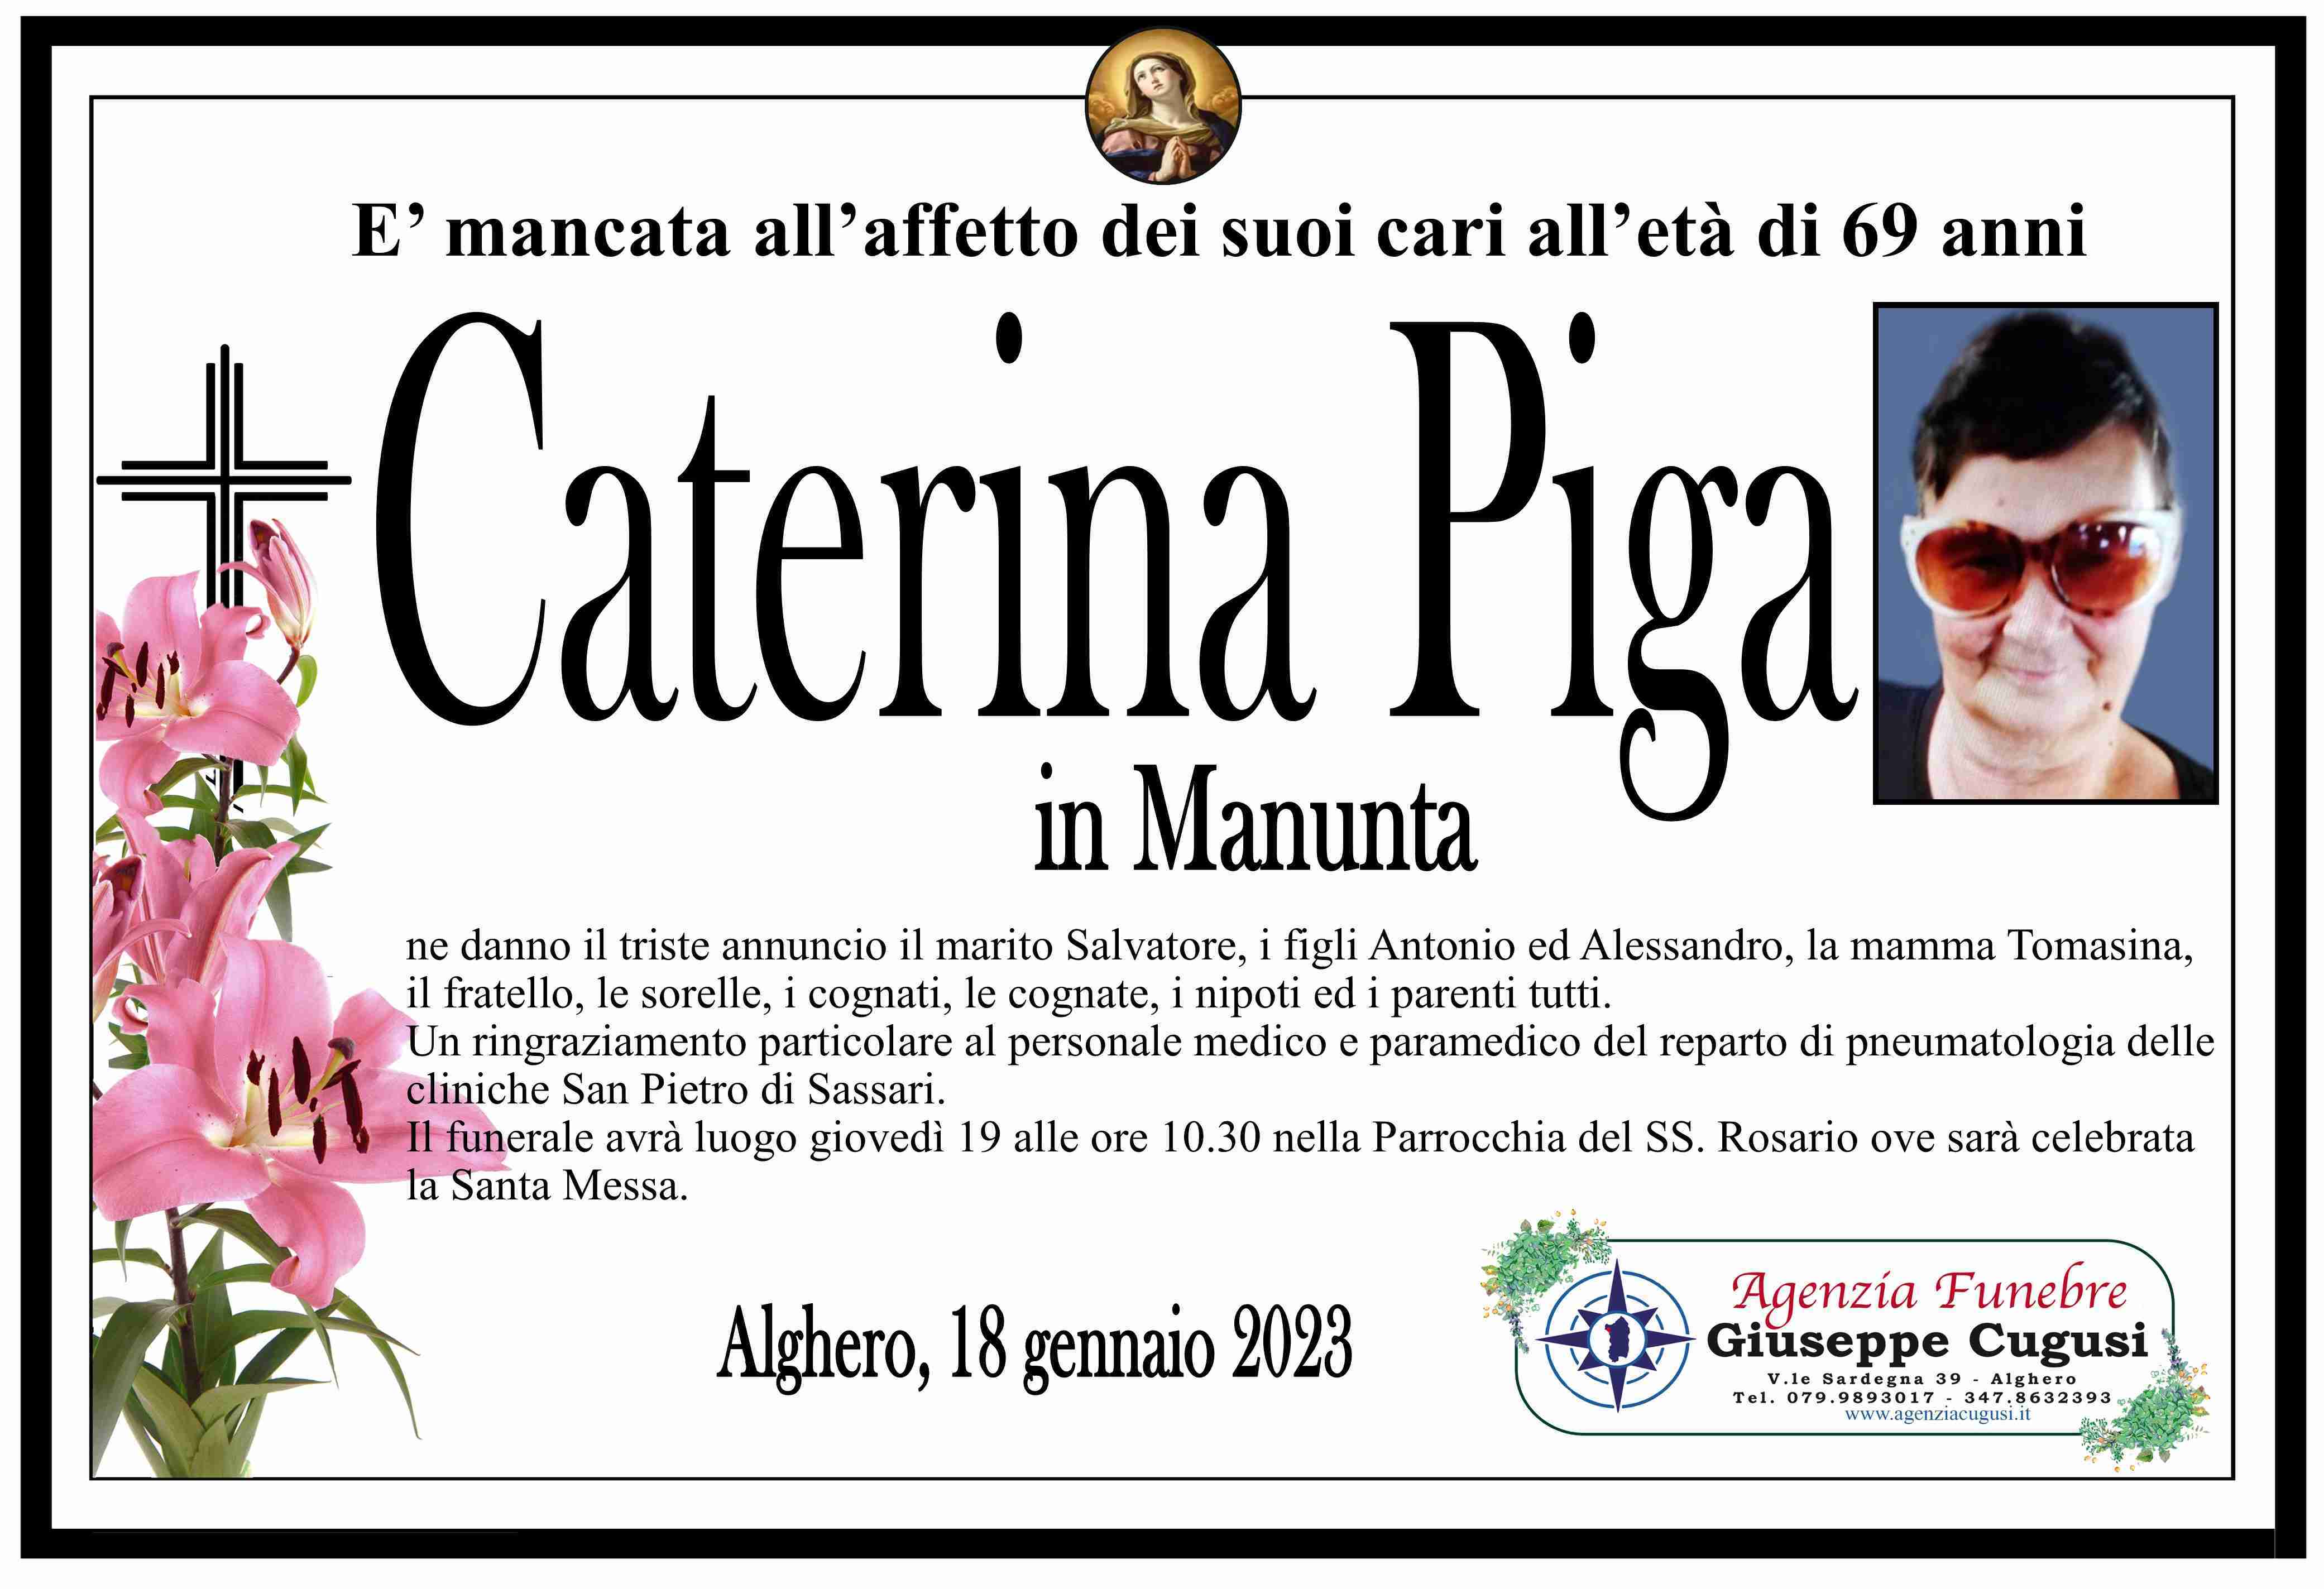 Caterina Piga